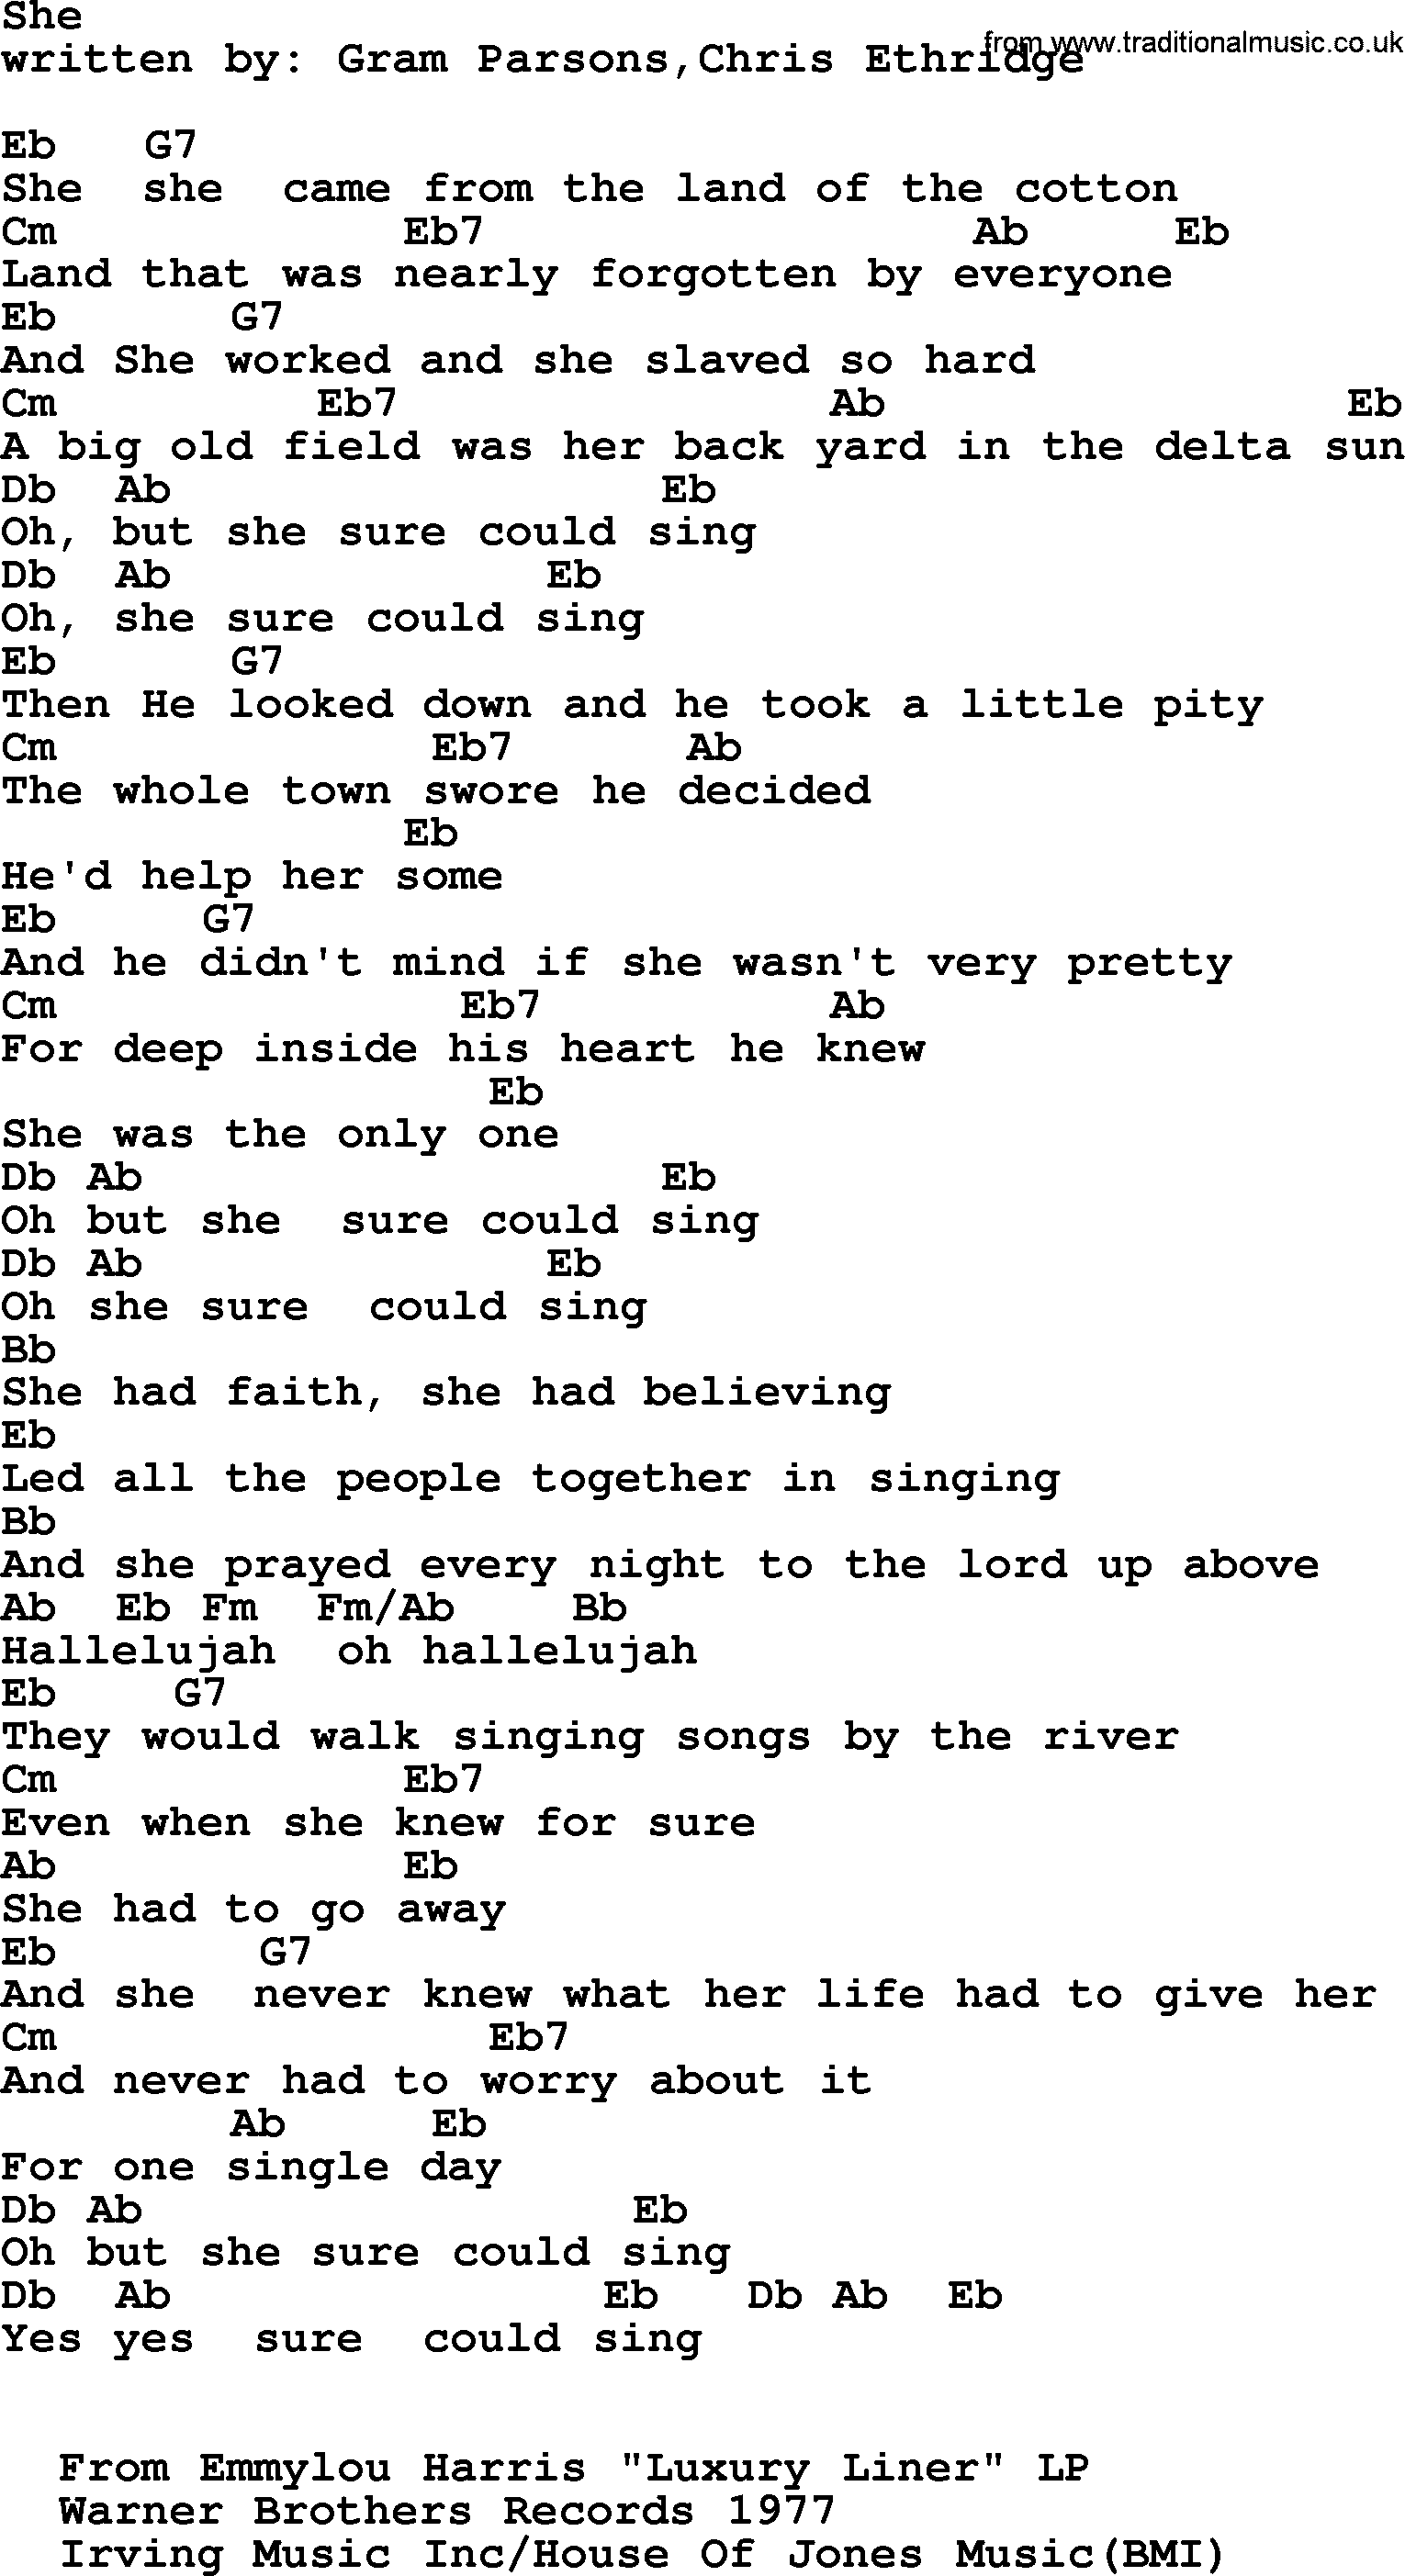 Emmylou Harris song: She lyrics and chords